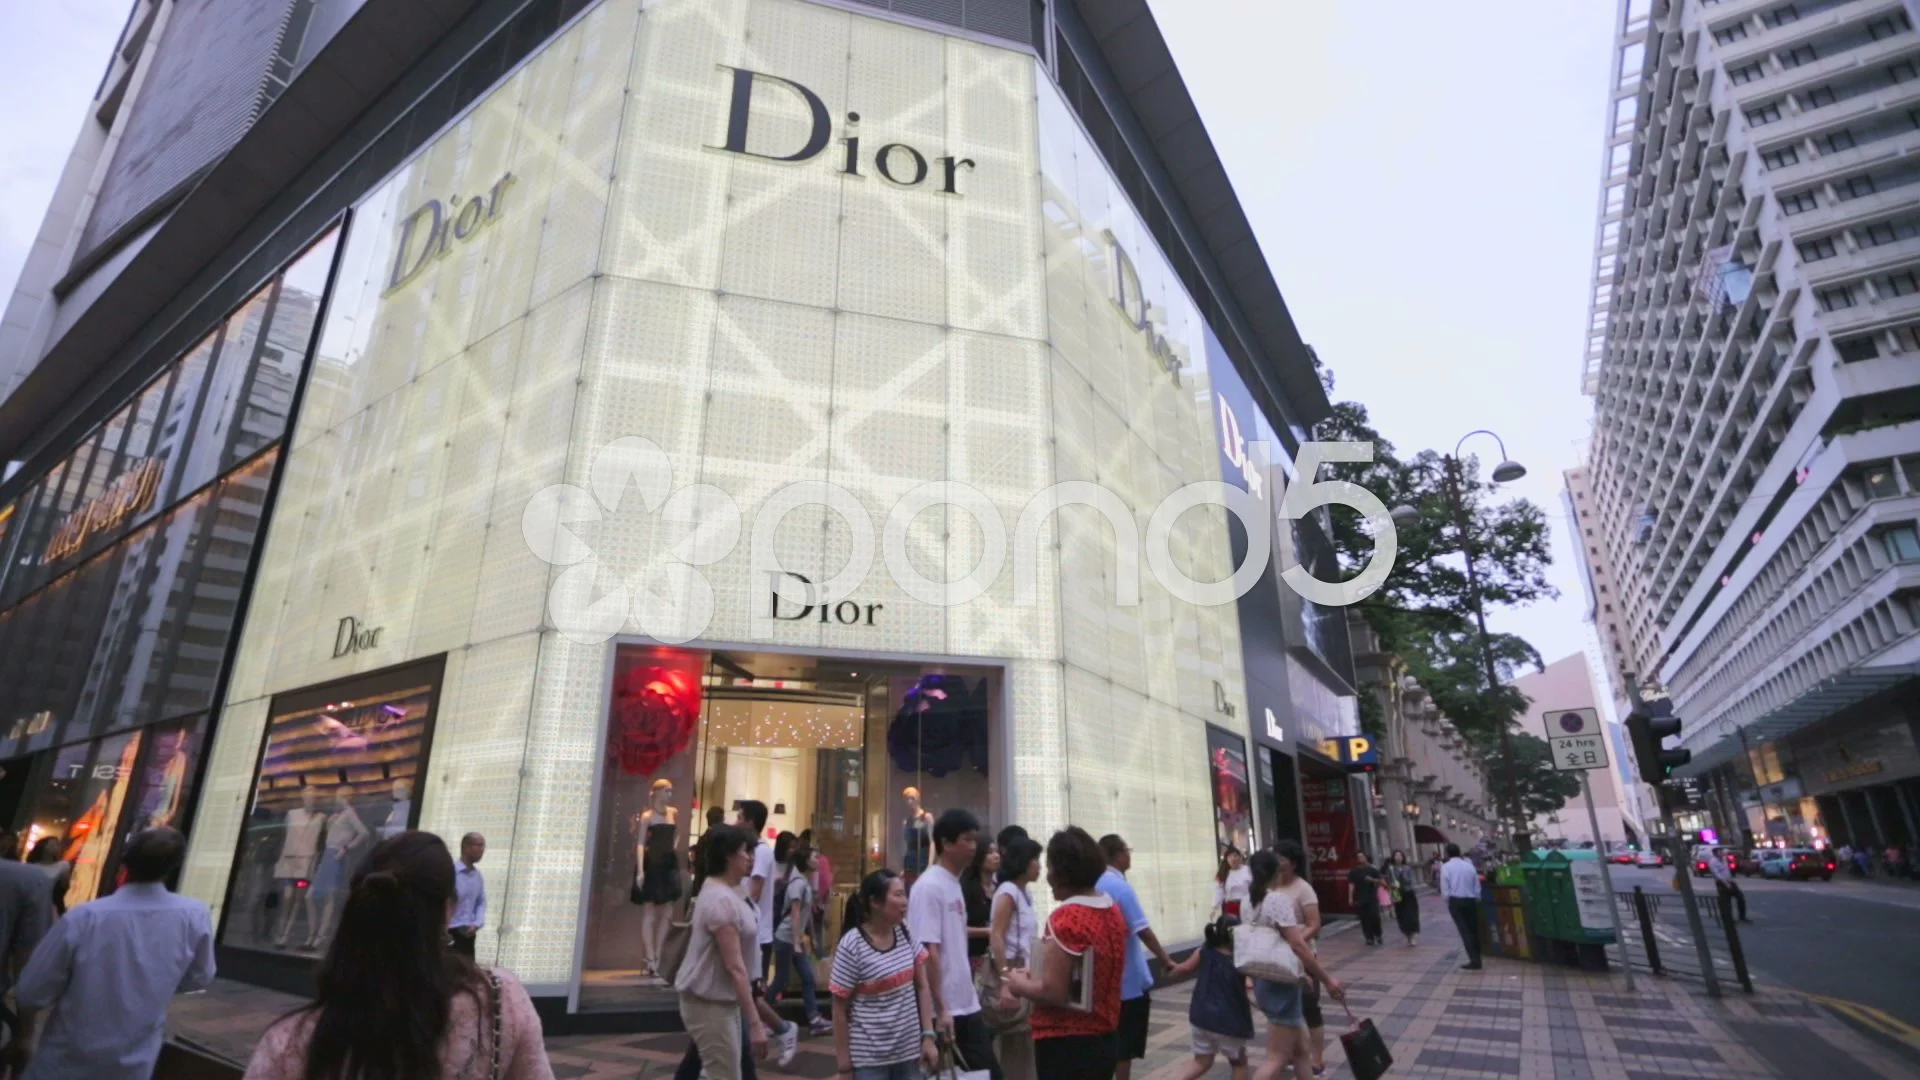 Cửa hàng Dior đẹp như mơ, một không gian thiết kế hoàn hảo đang chờ đón bạn với tinh thần thời trang đích thực. Hãy cùng chúng tôi khám phá không gian tuyệt vời này bằng cách click vào ảnh.